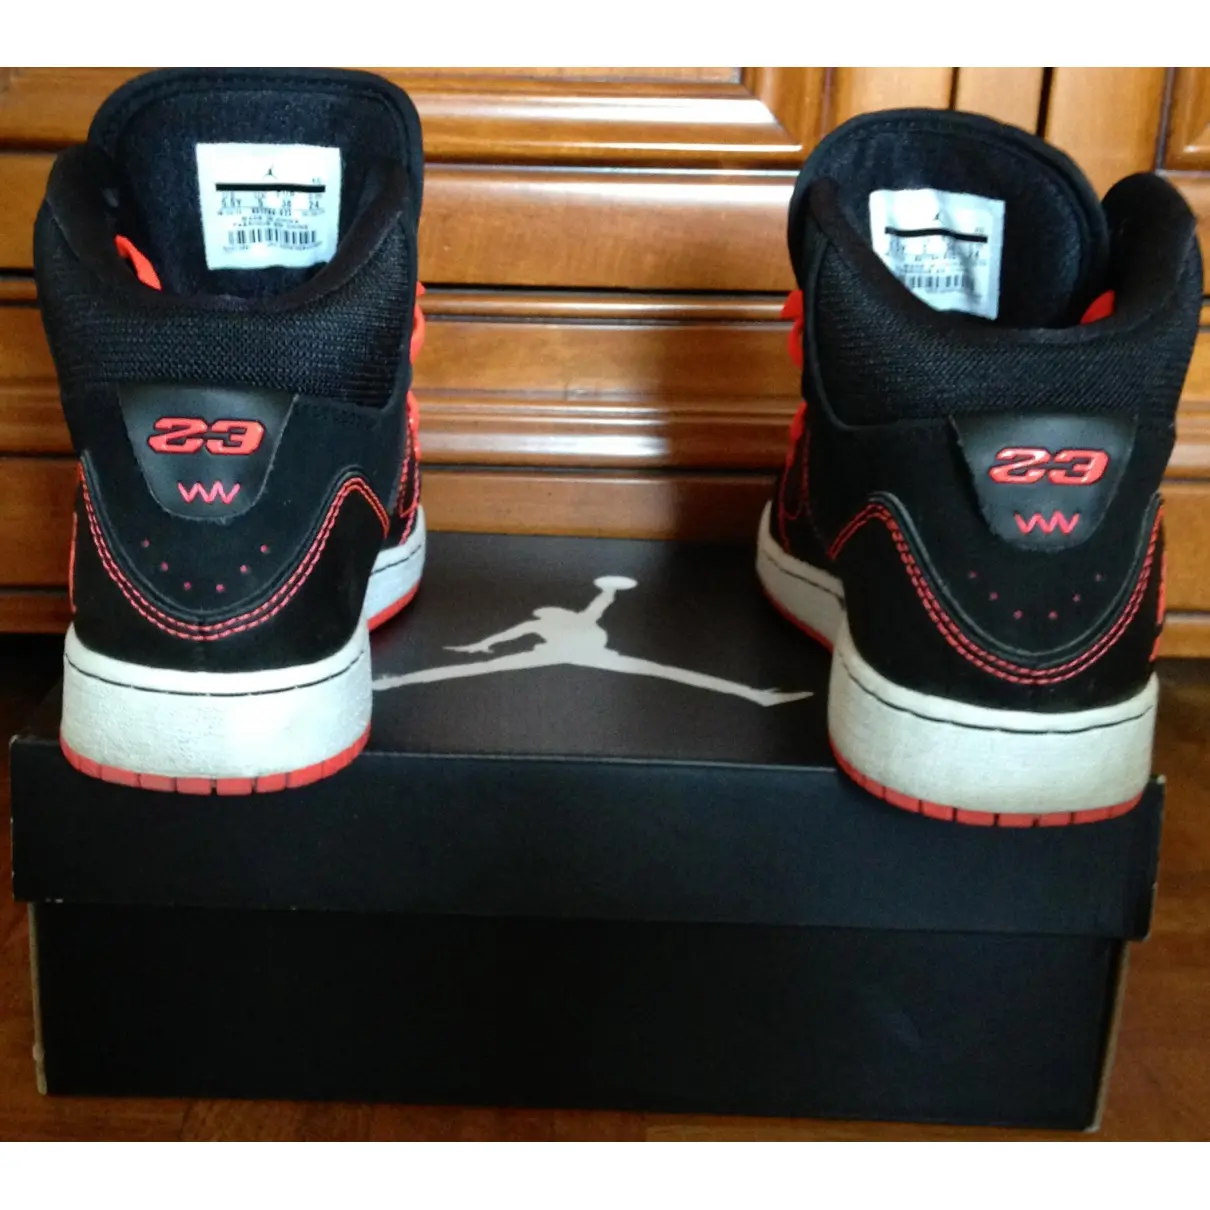 Buy Nike Black Leather Trainers Jordan online